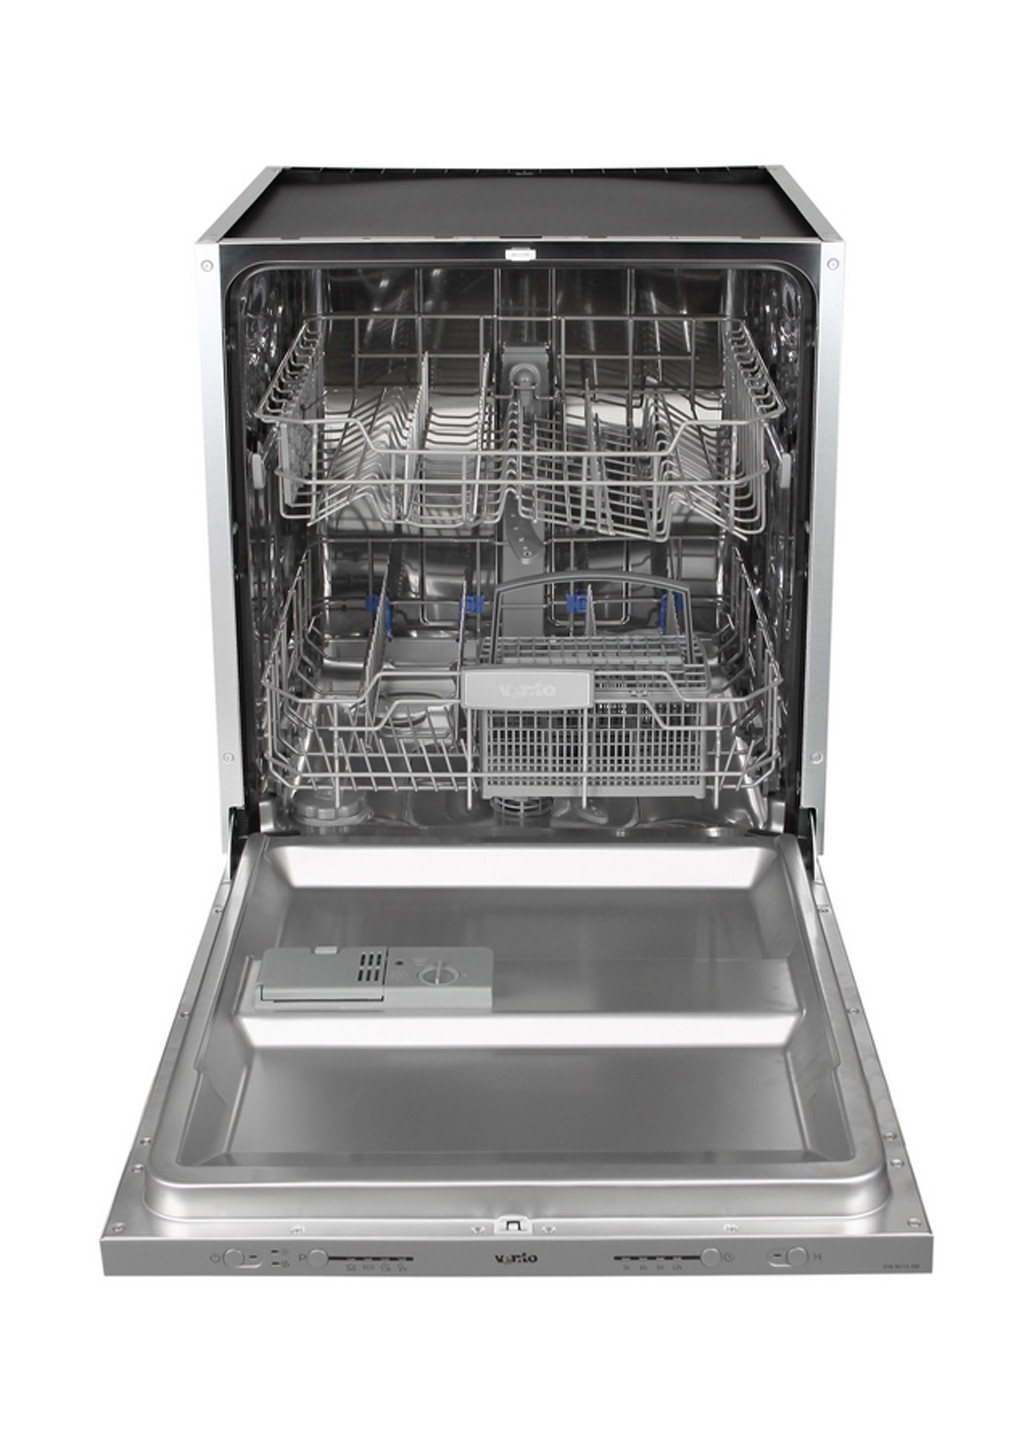 Посудомоечная машина полновстраиваемая Ventolux DW 6012 4M